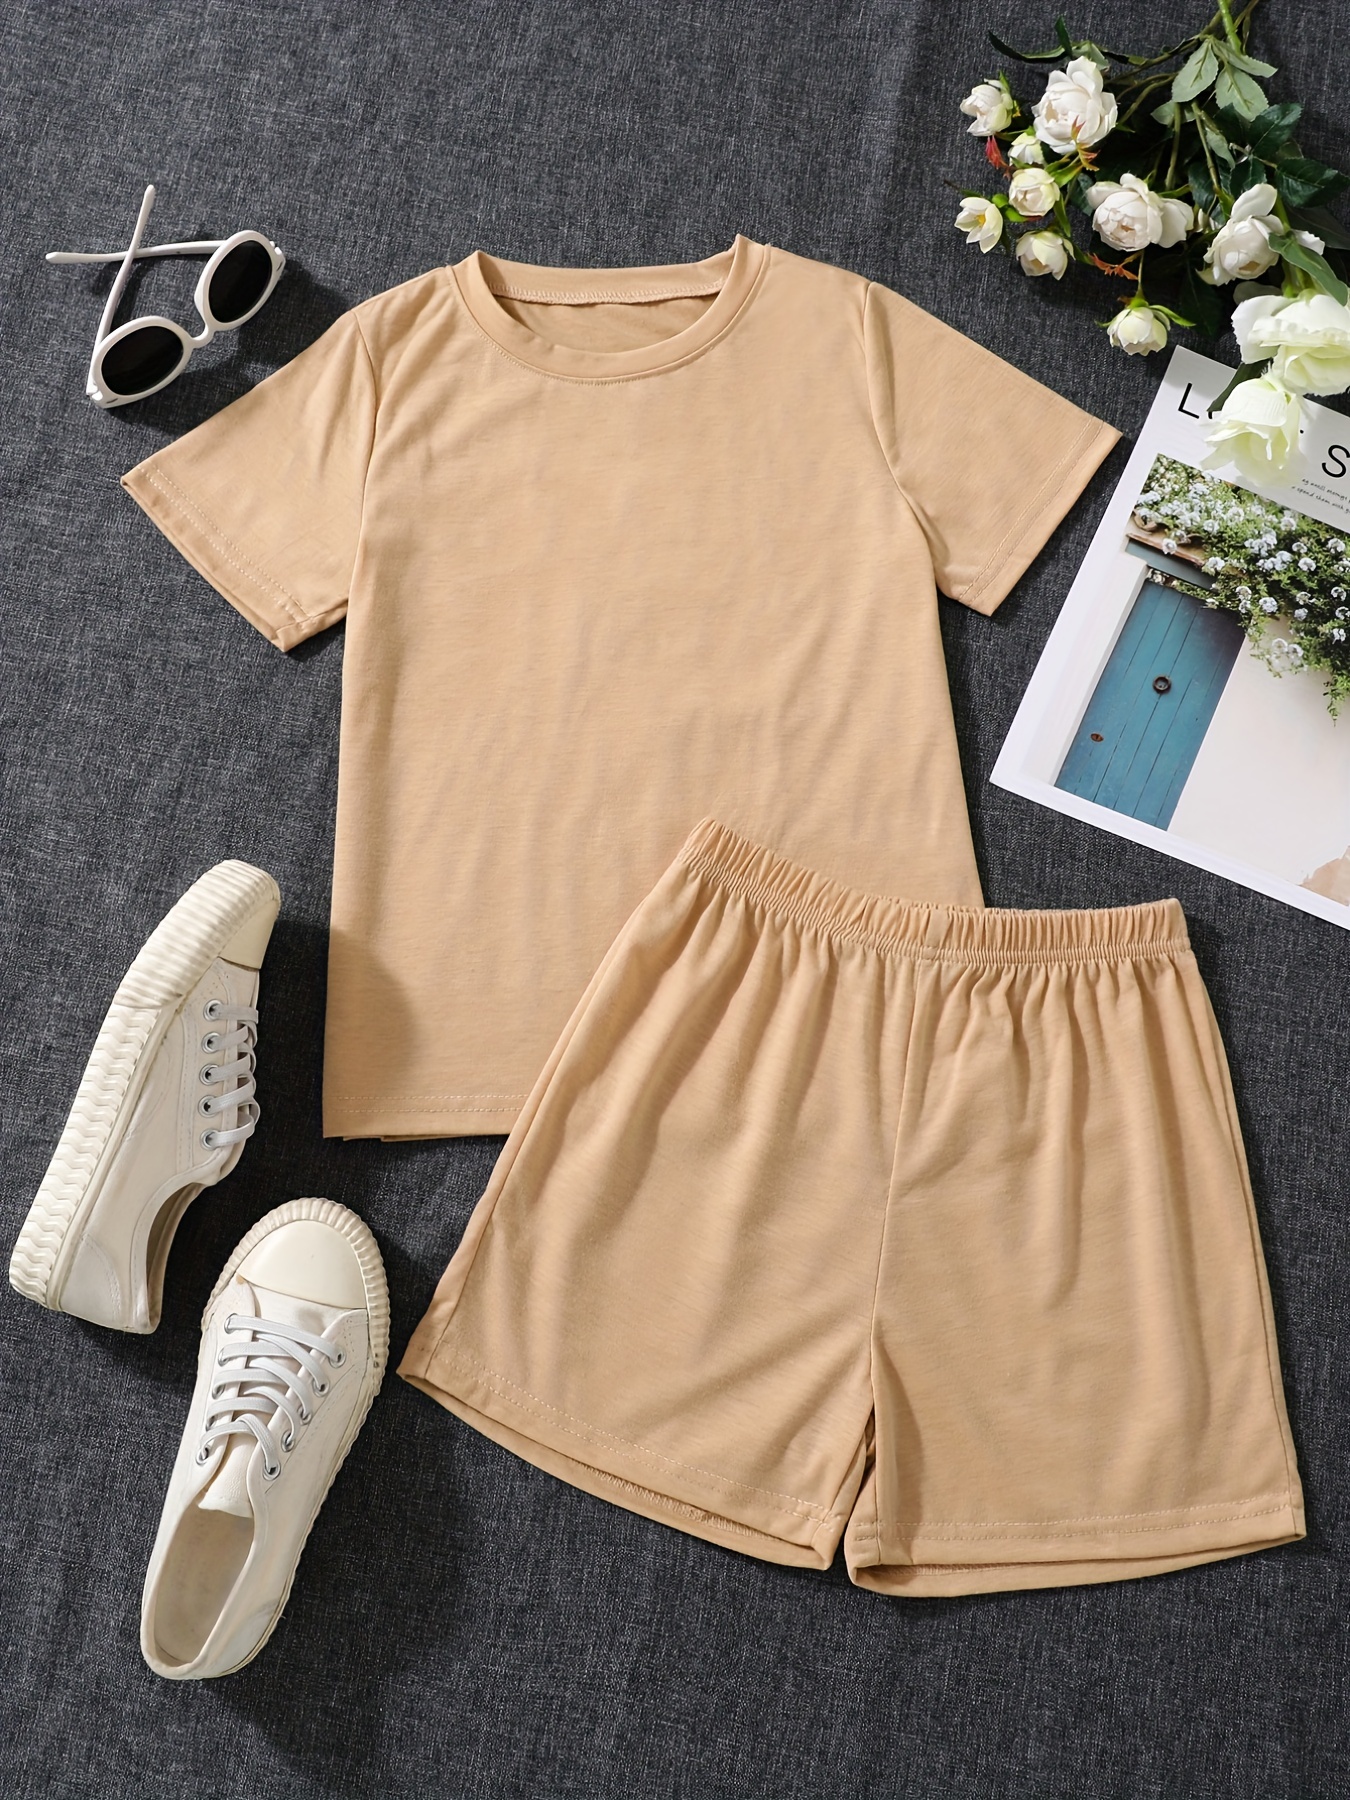 Summer Boys and Girls Short Sleeve T-shirt Shorts 2-Piece Set New